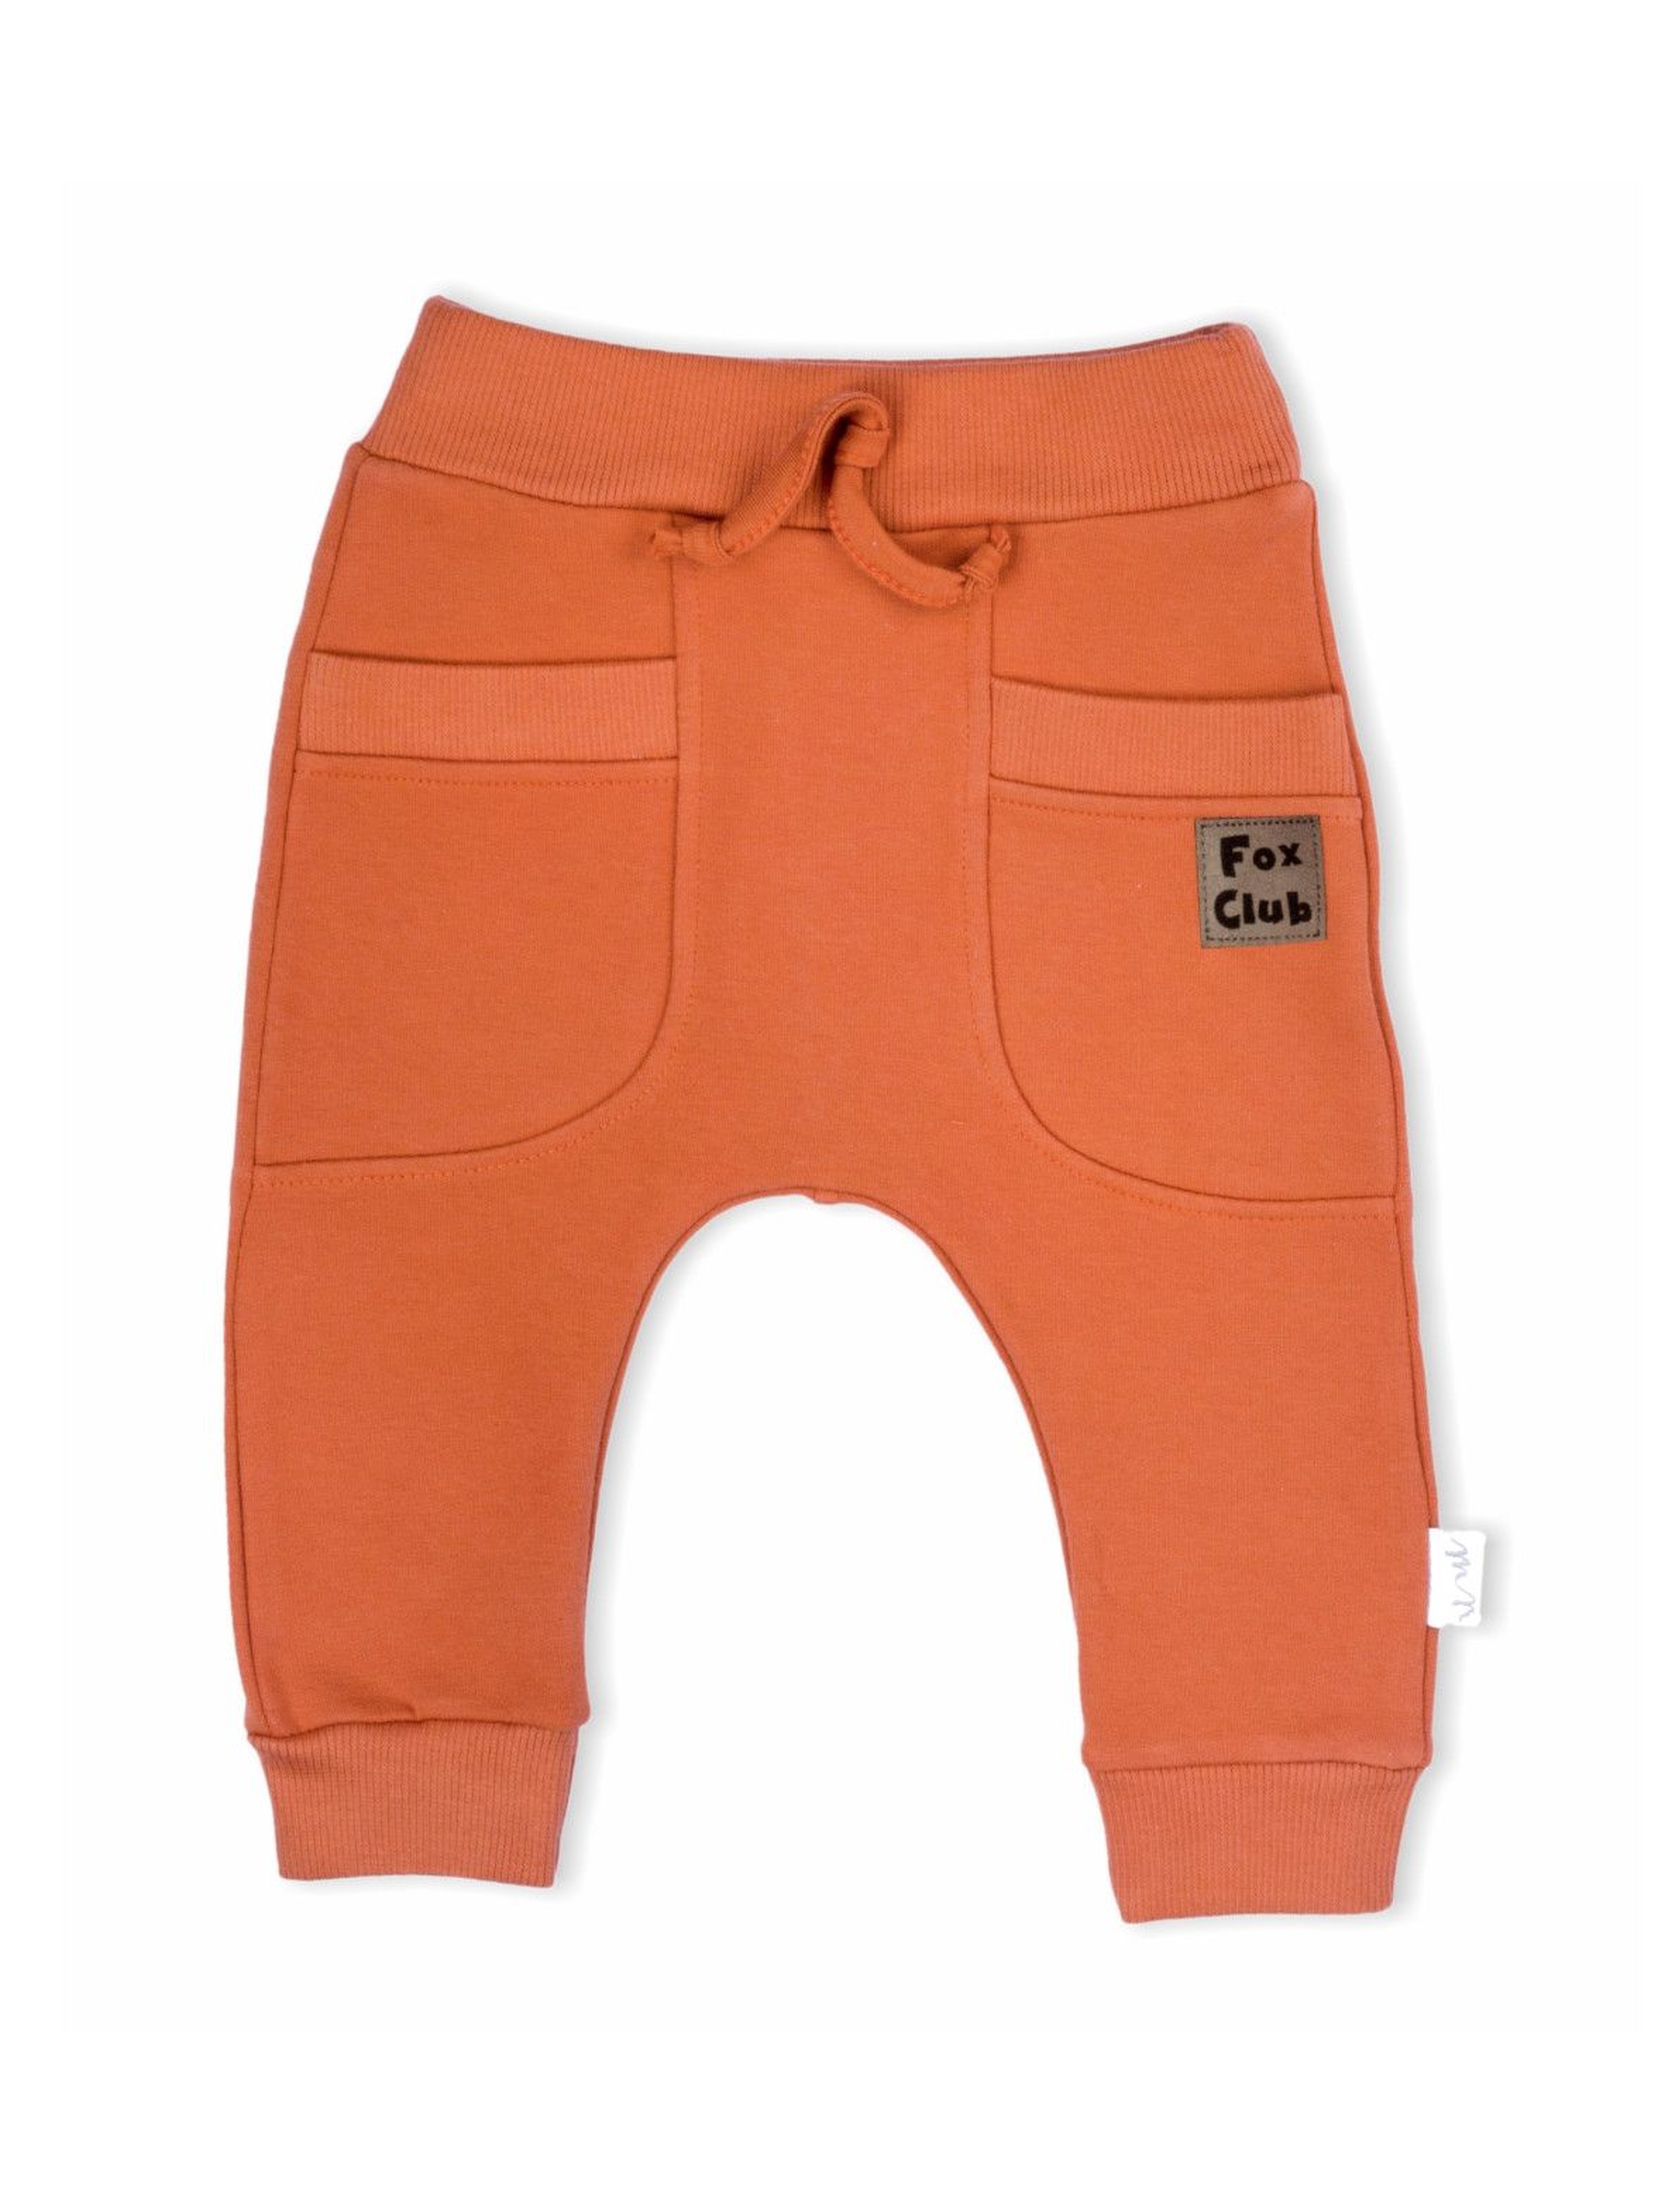 Spodnie dresowe niemowlęce Fox Club -pomarańczowe